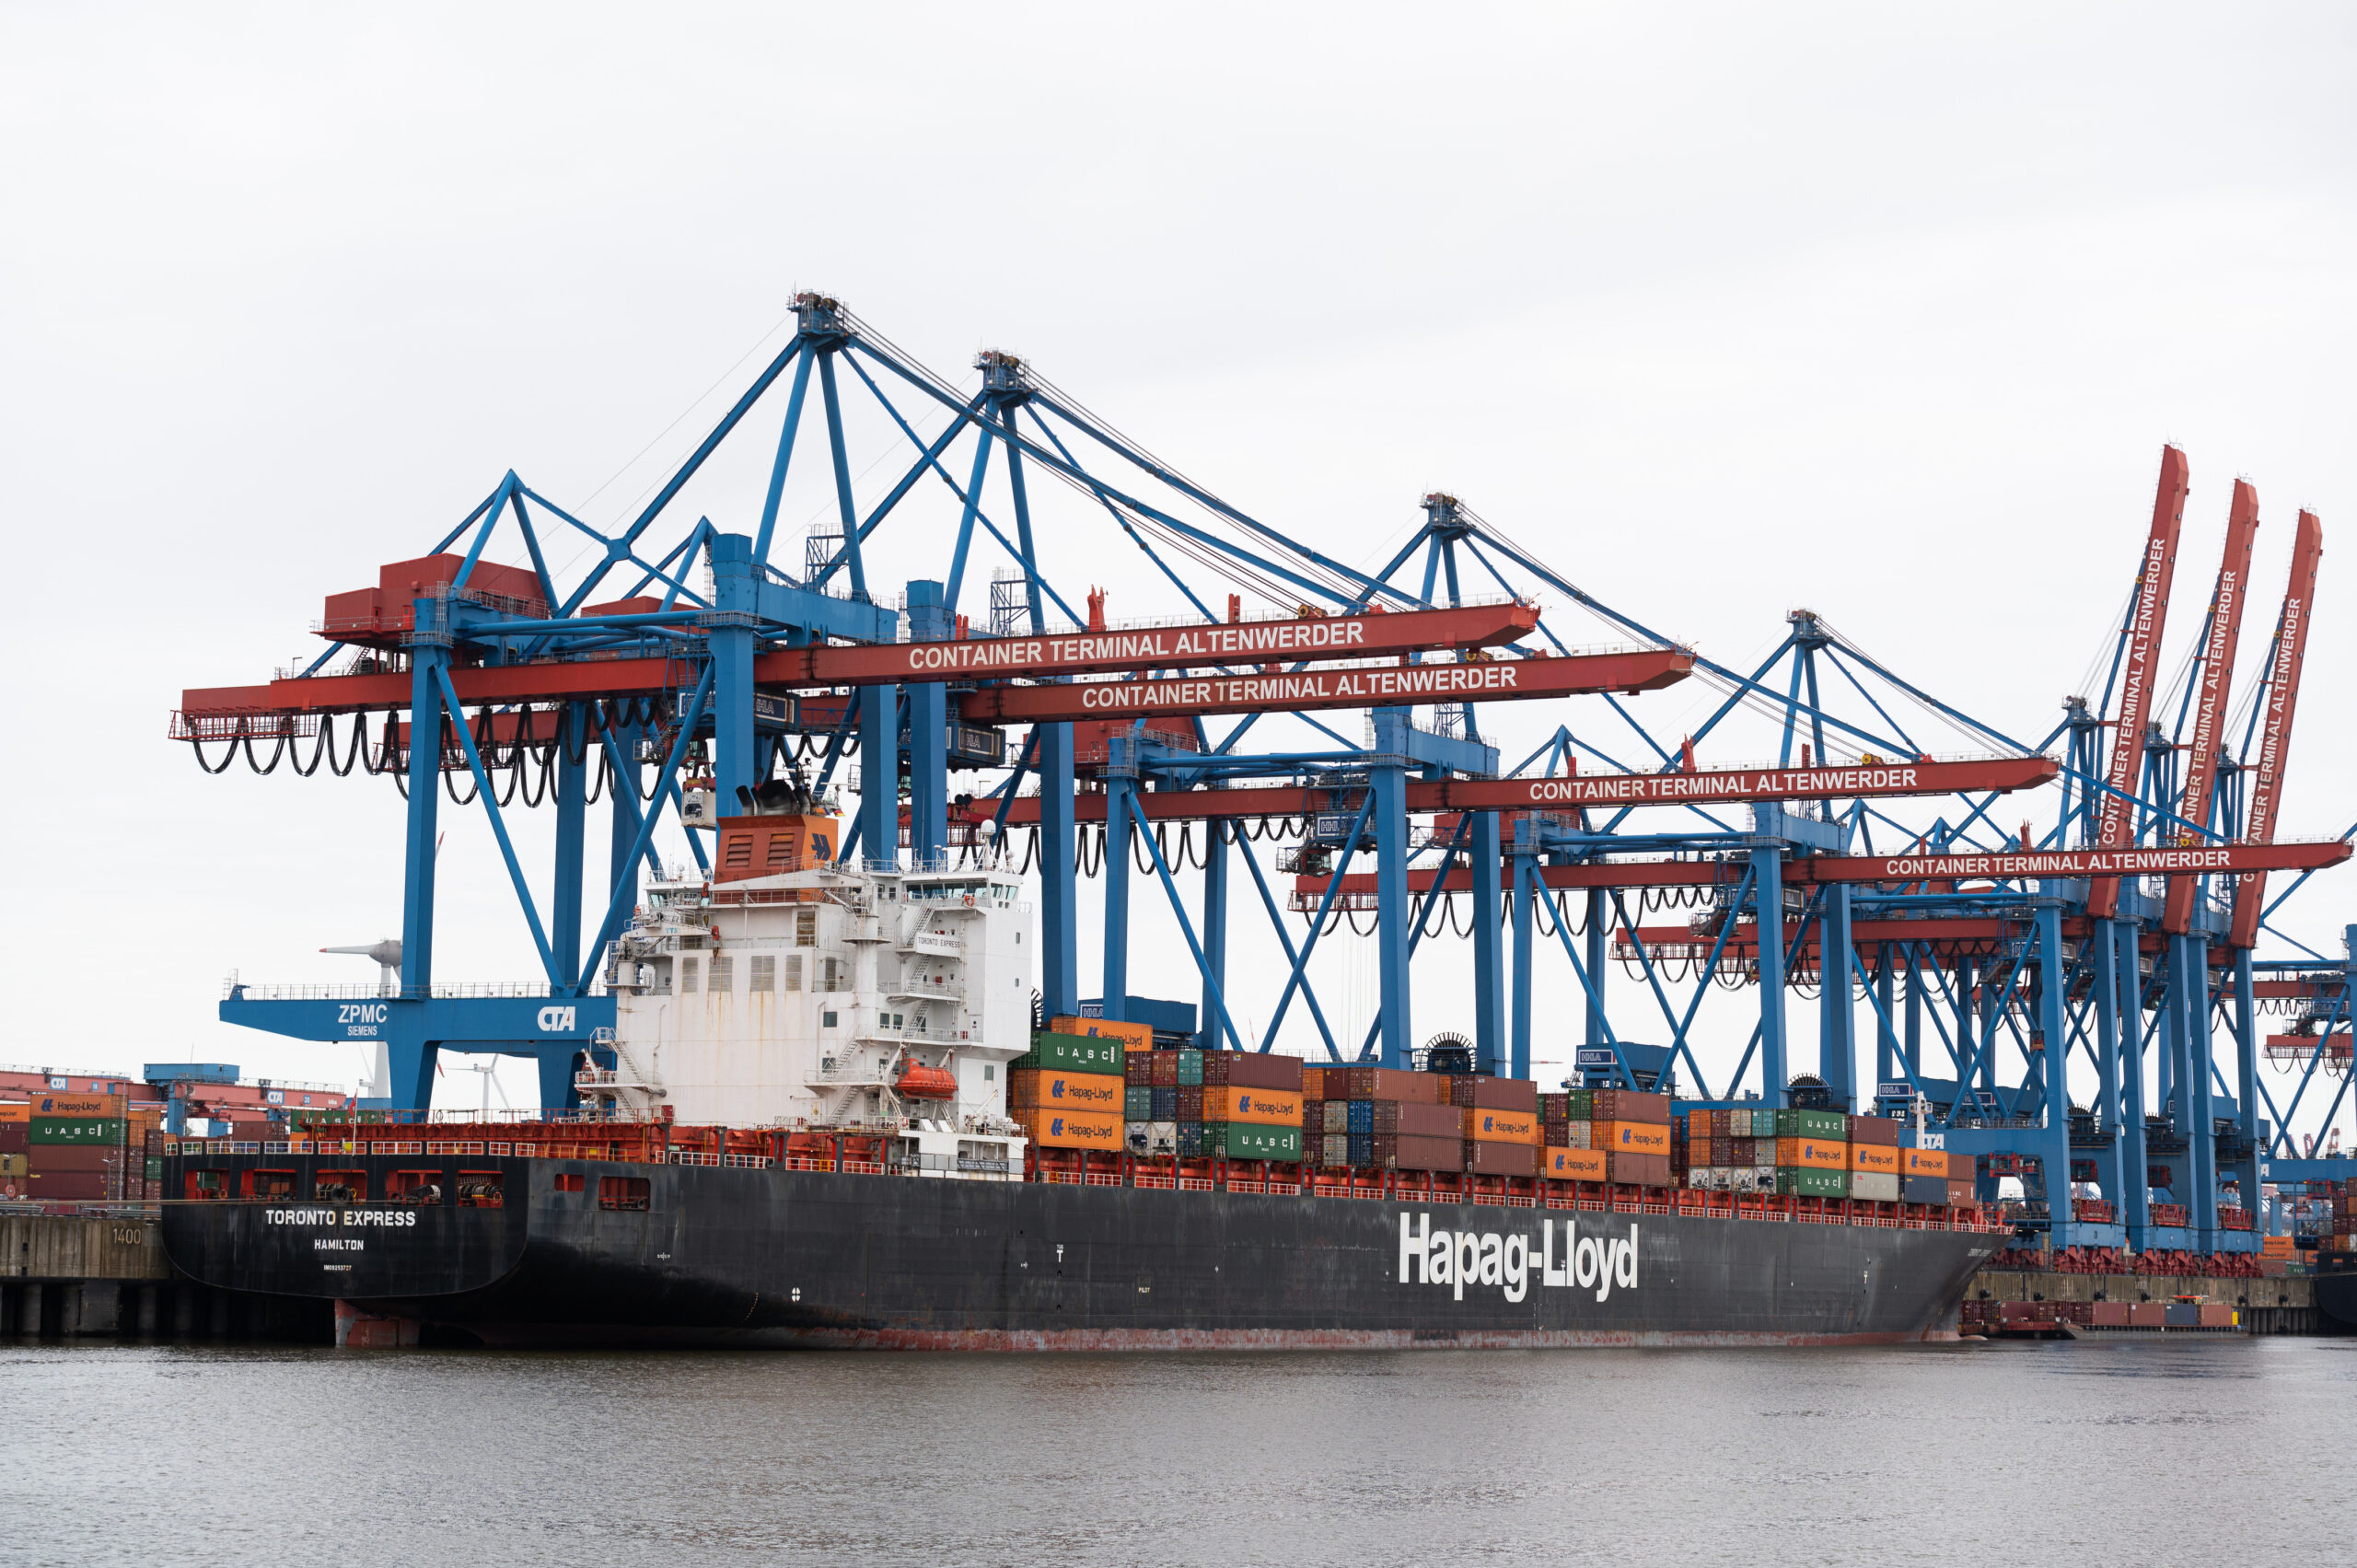 Ein Containerschiff der Reederei Hapag-Lloyd liegt am Container Terminal Altenwerder.